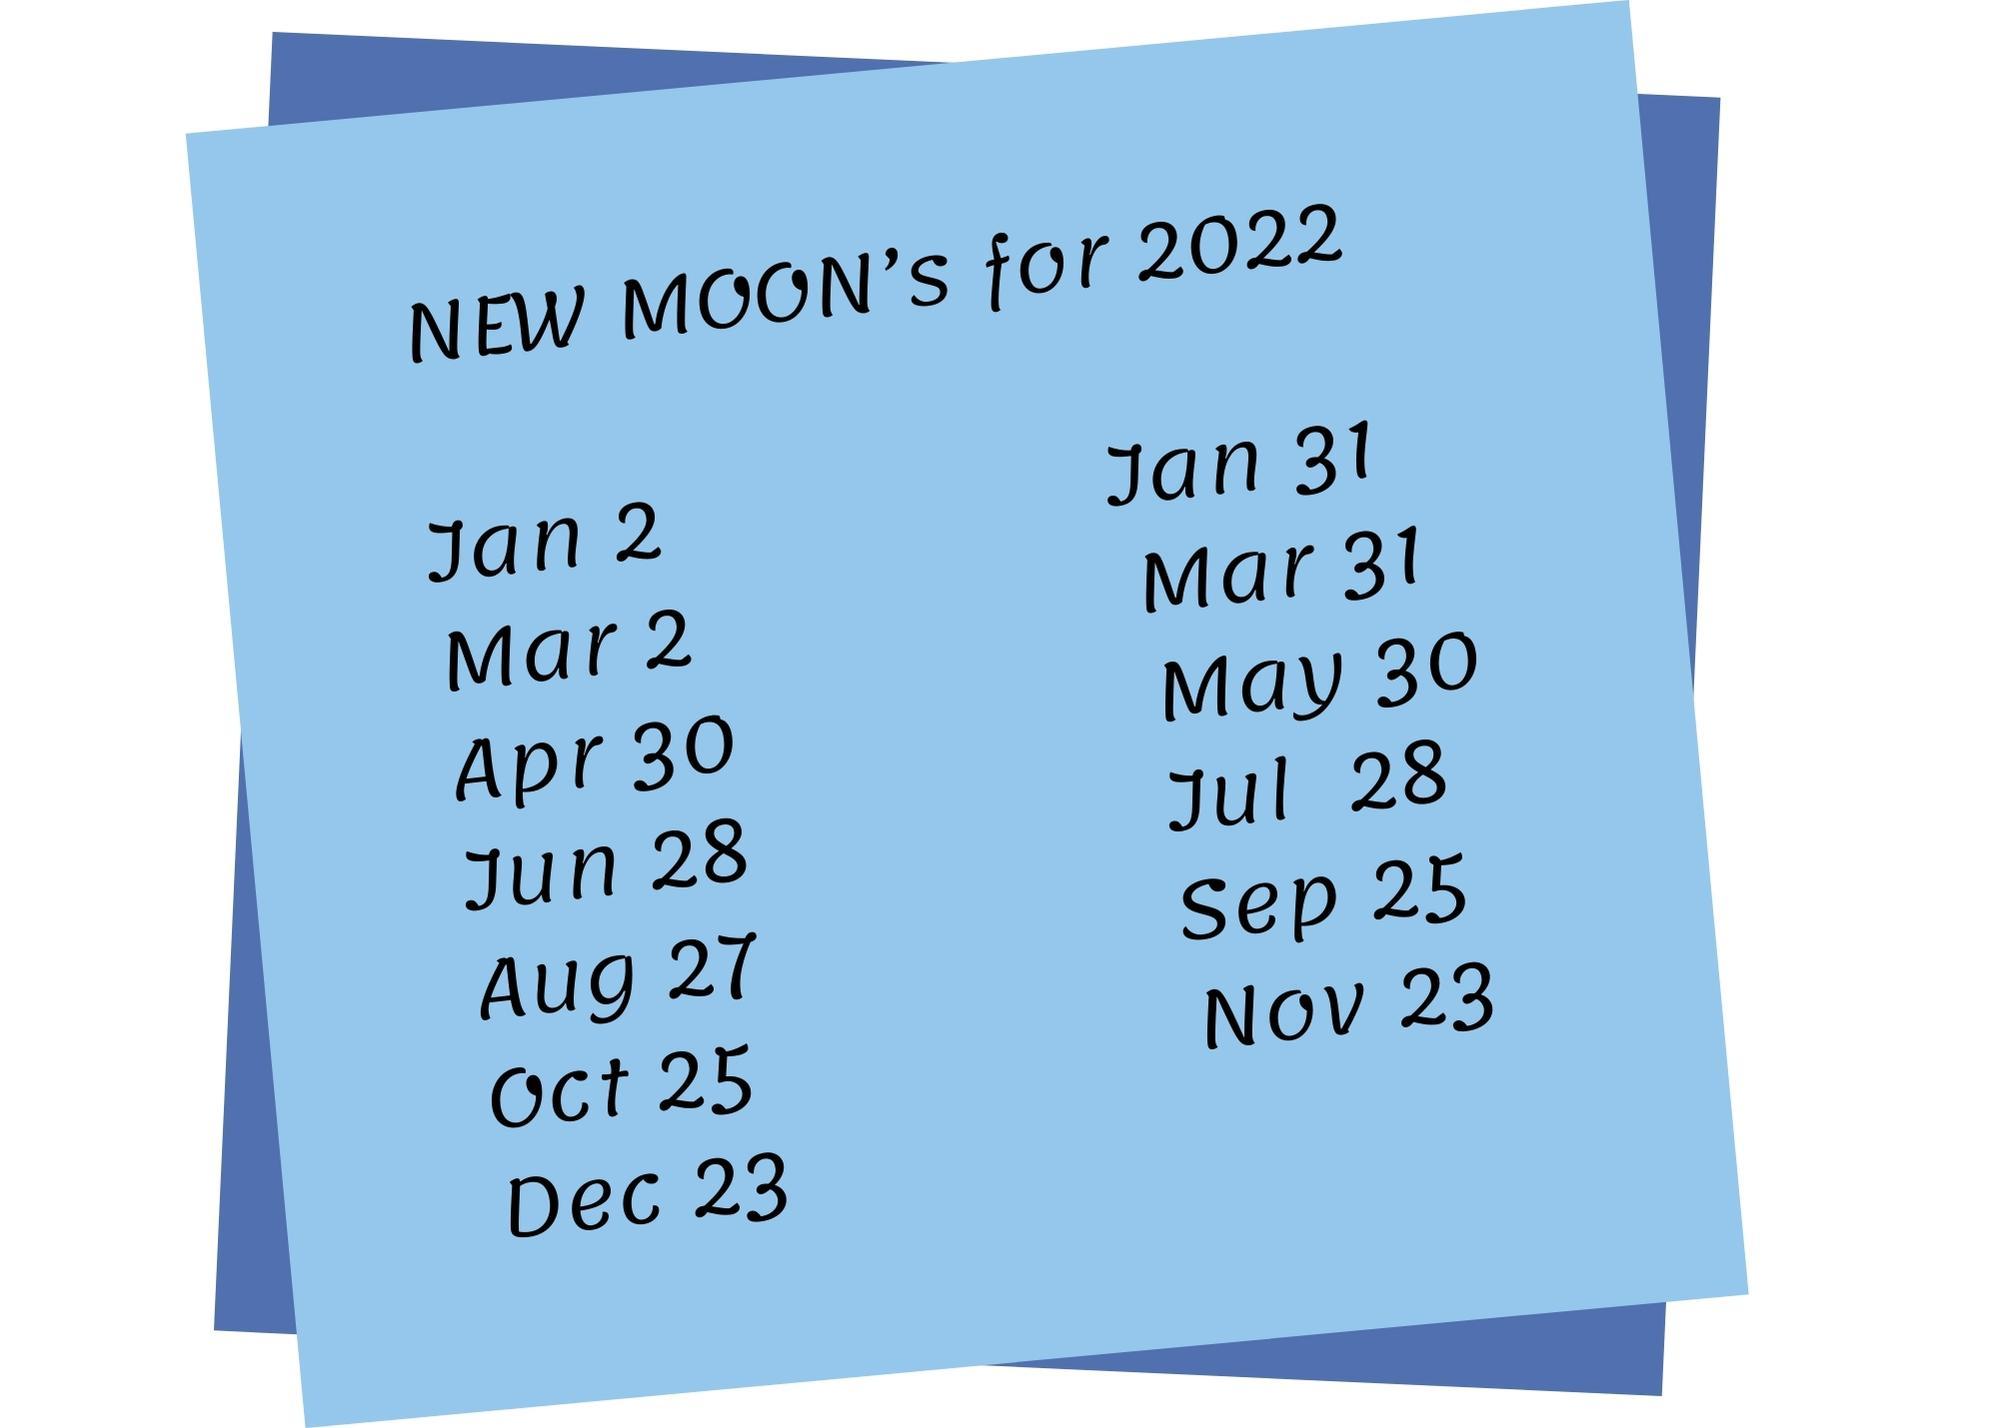 2022 New Moon Schedule